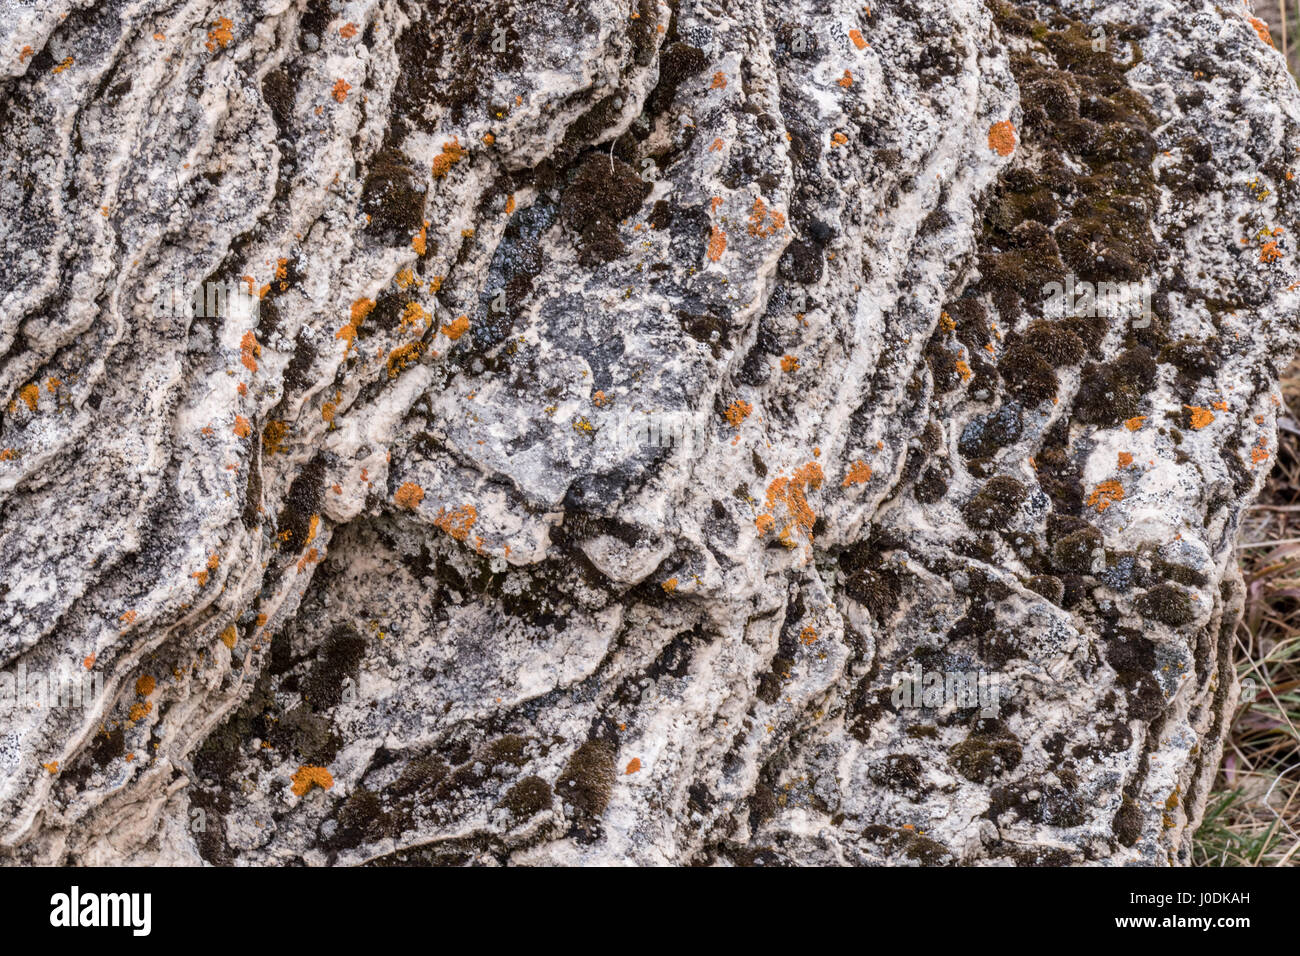 Soda Butte montículo en el Parque Nacional Yellowstone, Wyoming, Estados Unidos. Este travertino (carbonato de calcio) montículo fue formado hace más de un siglo por un caliente sp Foto de stock